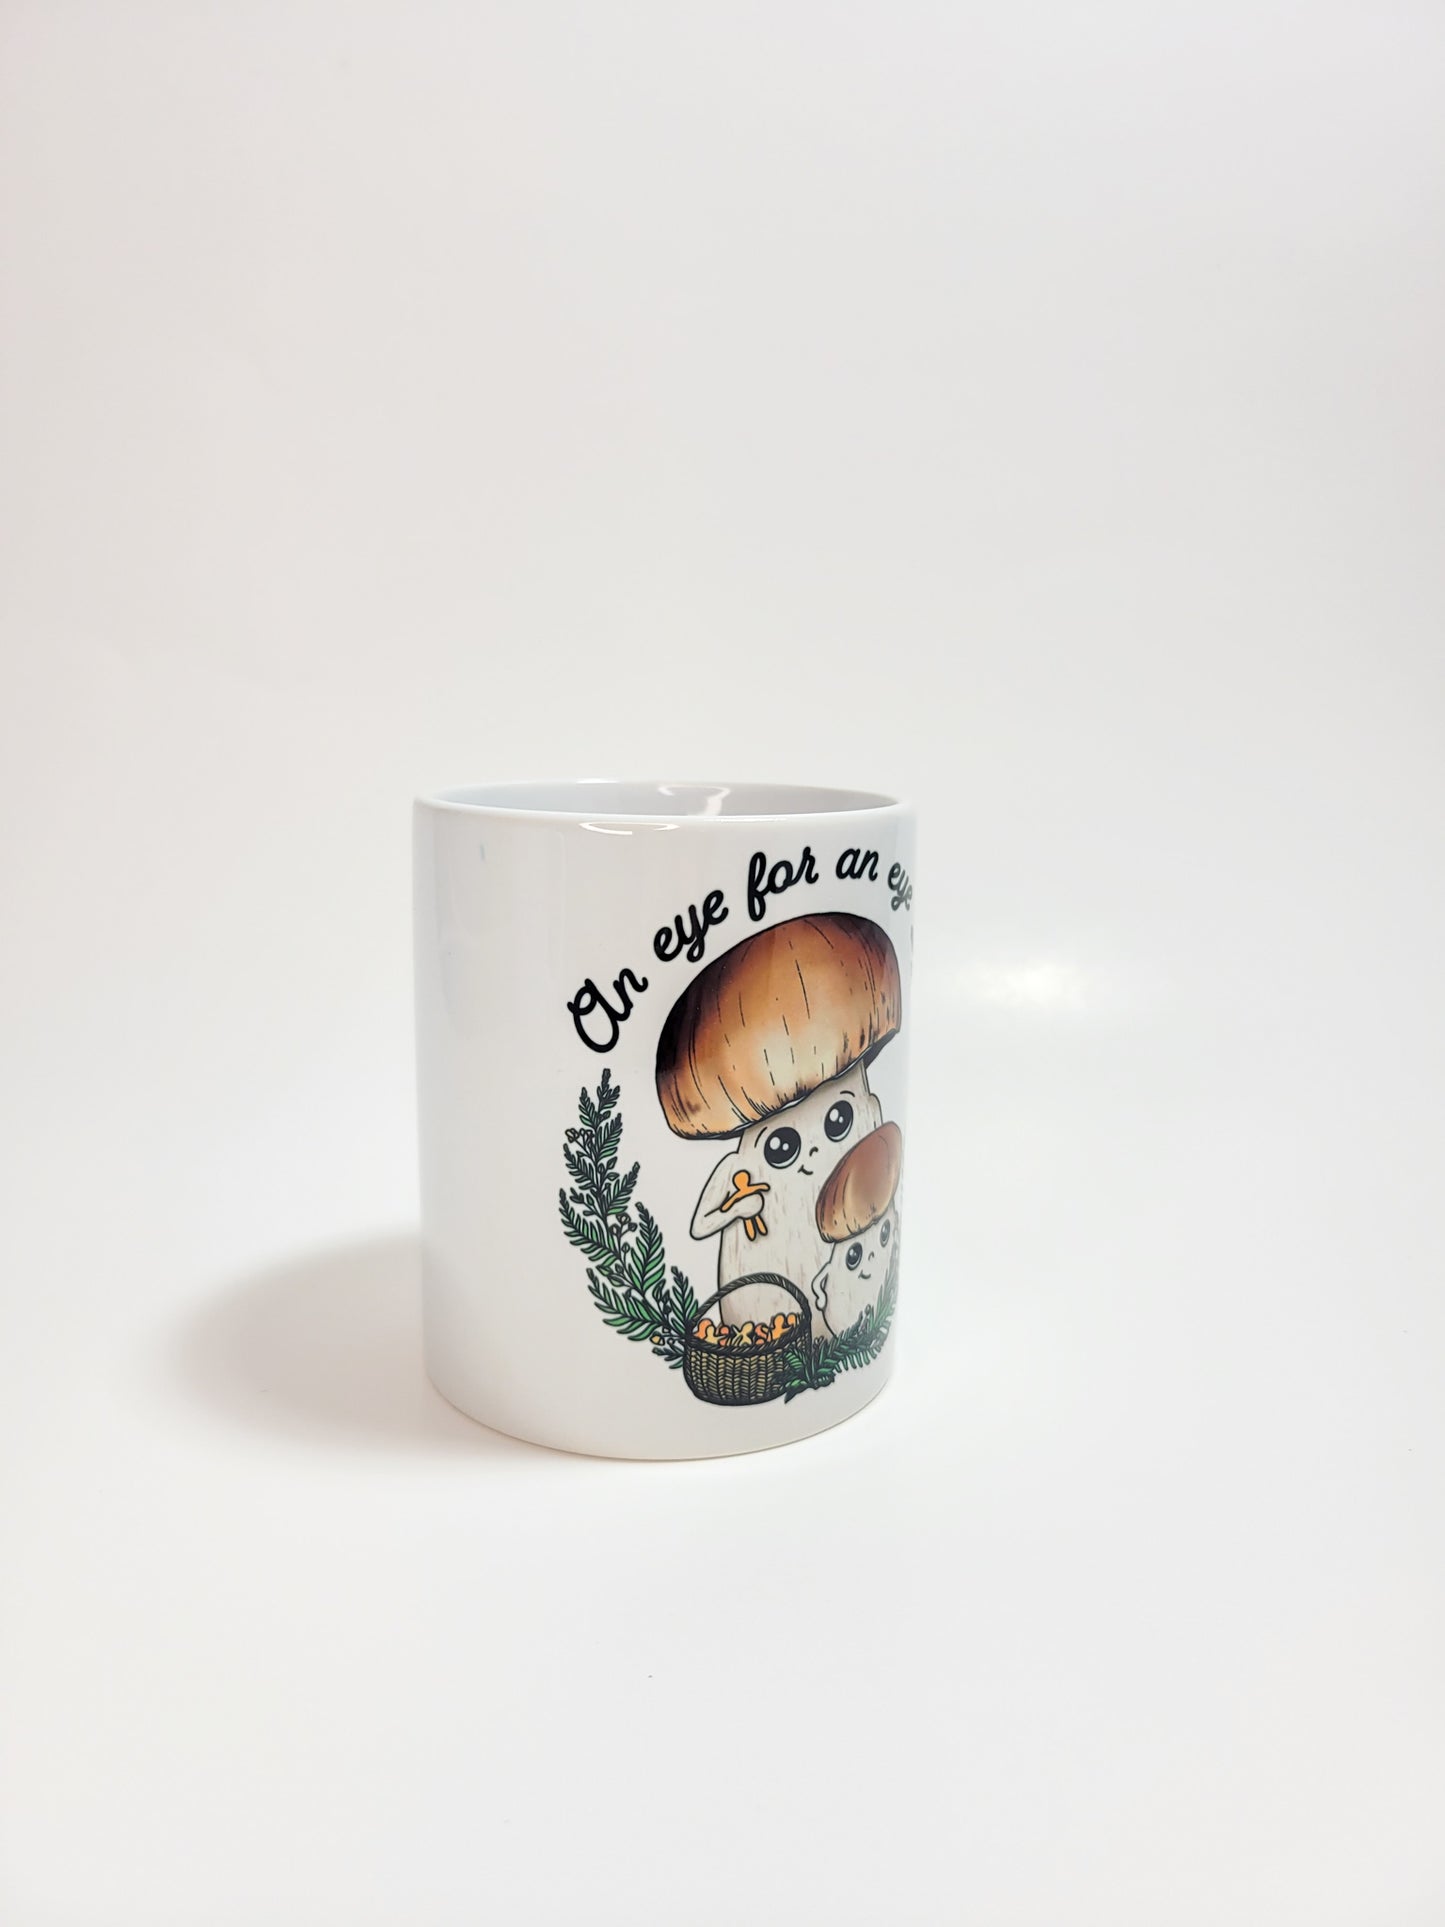 An Eye For An Eye | Funny Porcini Mushroom Mug | Mushroom Artwork on Ceramic Cup | 11oz/15oz Sizes